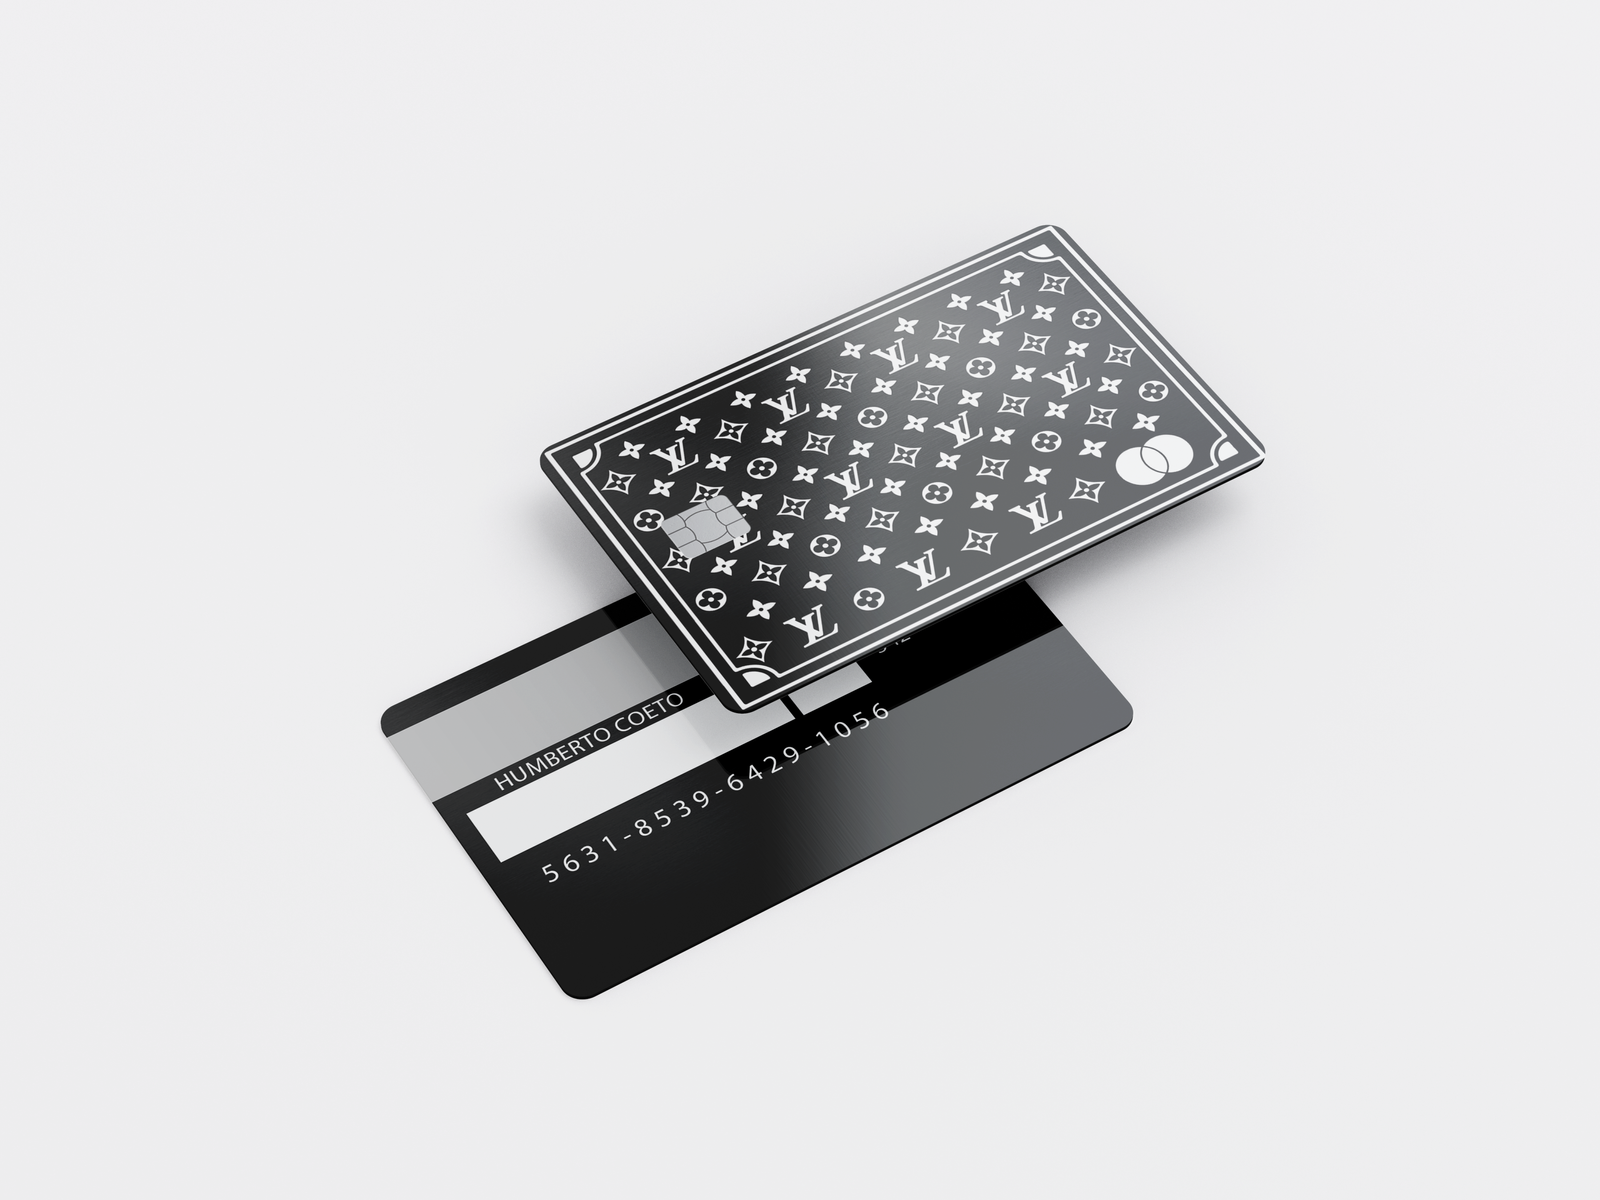 Metal Card LV Pattern